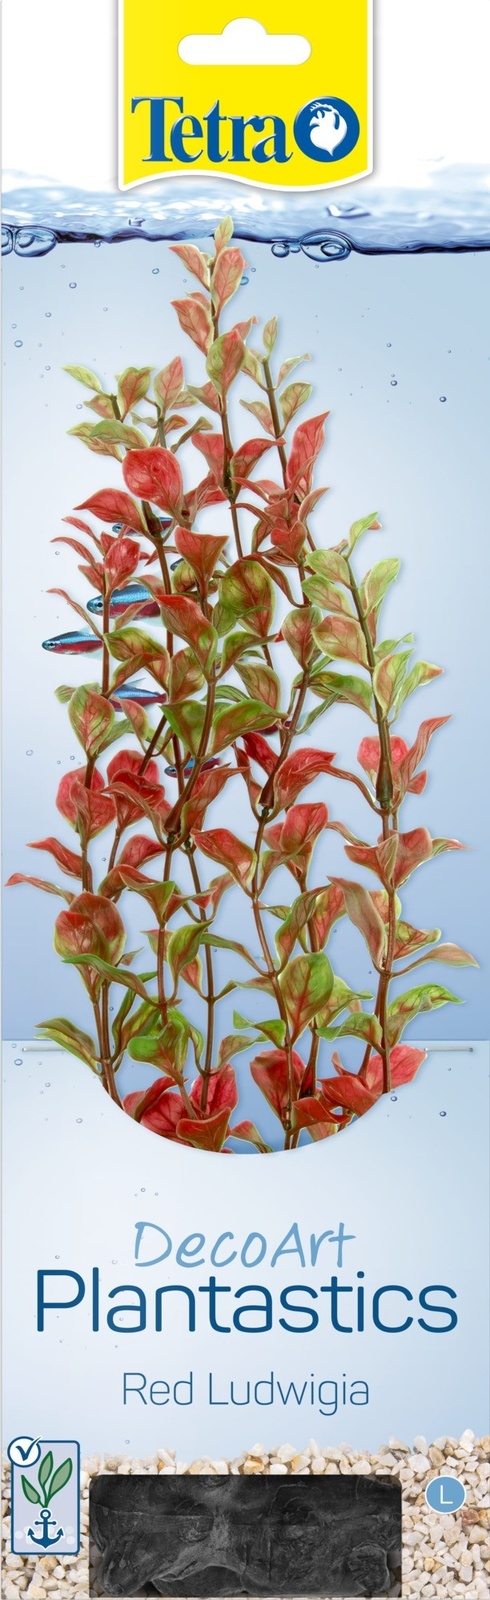 Tetra (оборудование) Tetra (оборудование) растение DecoArt Plantastics Red Ludvigia 30 см (115 г)